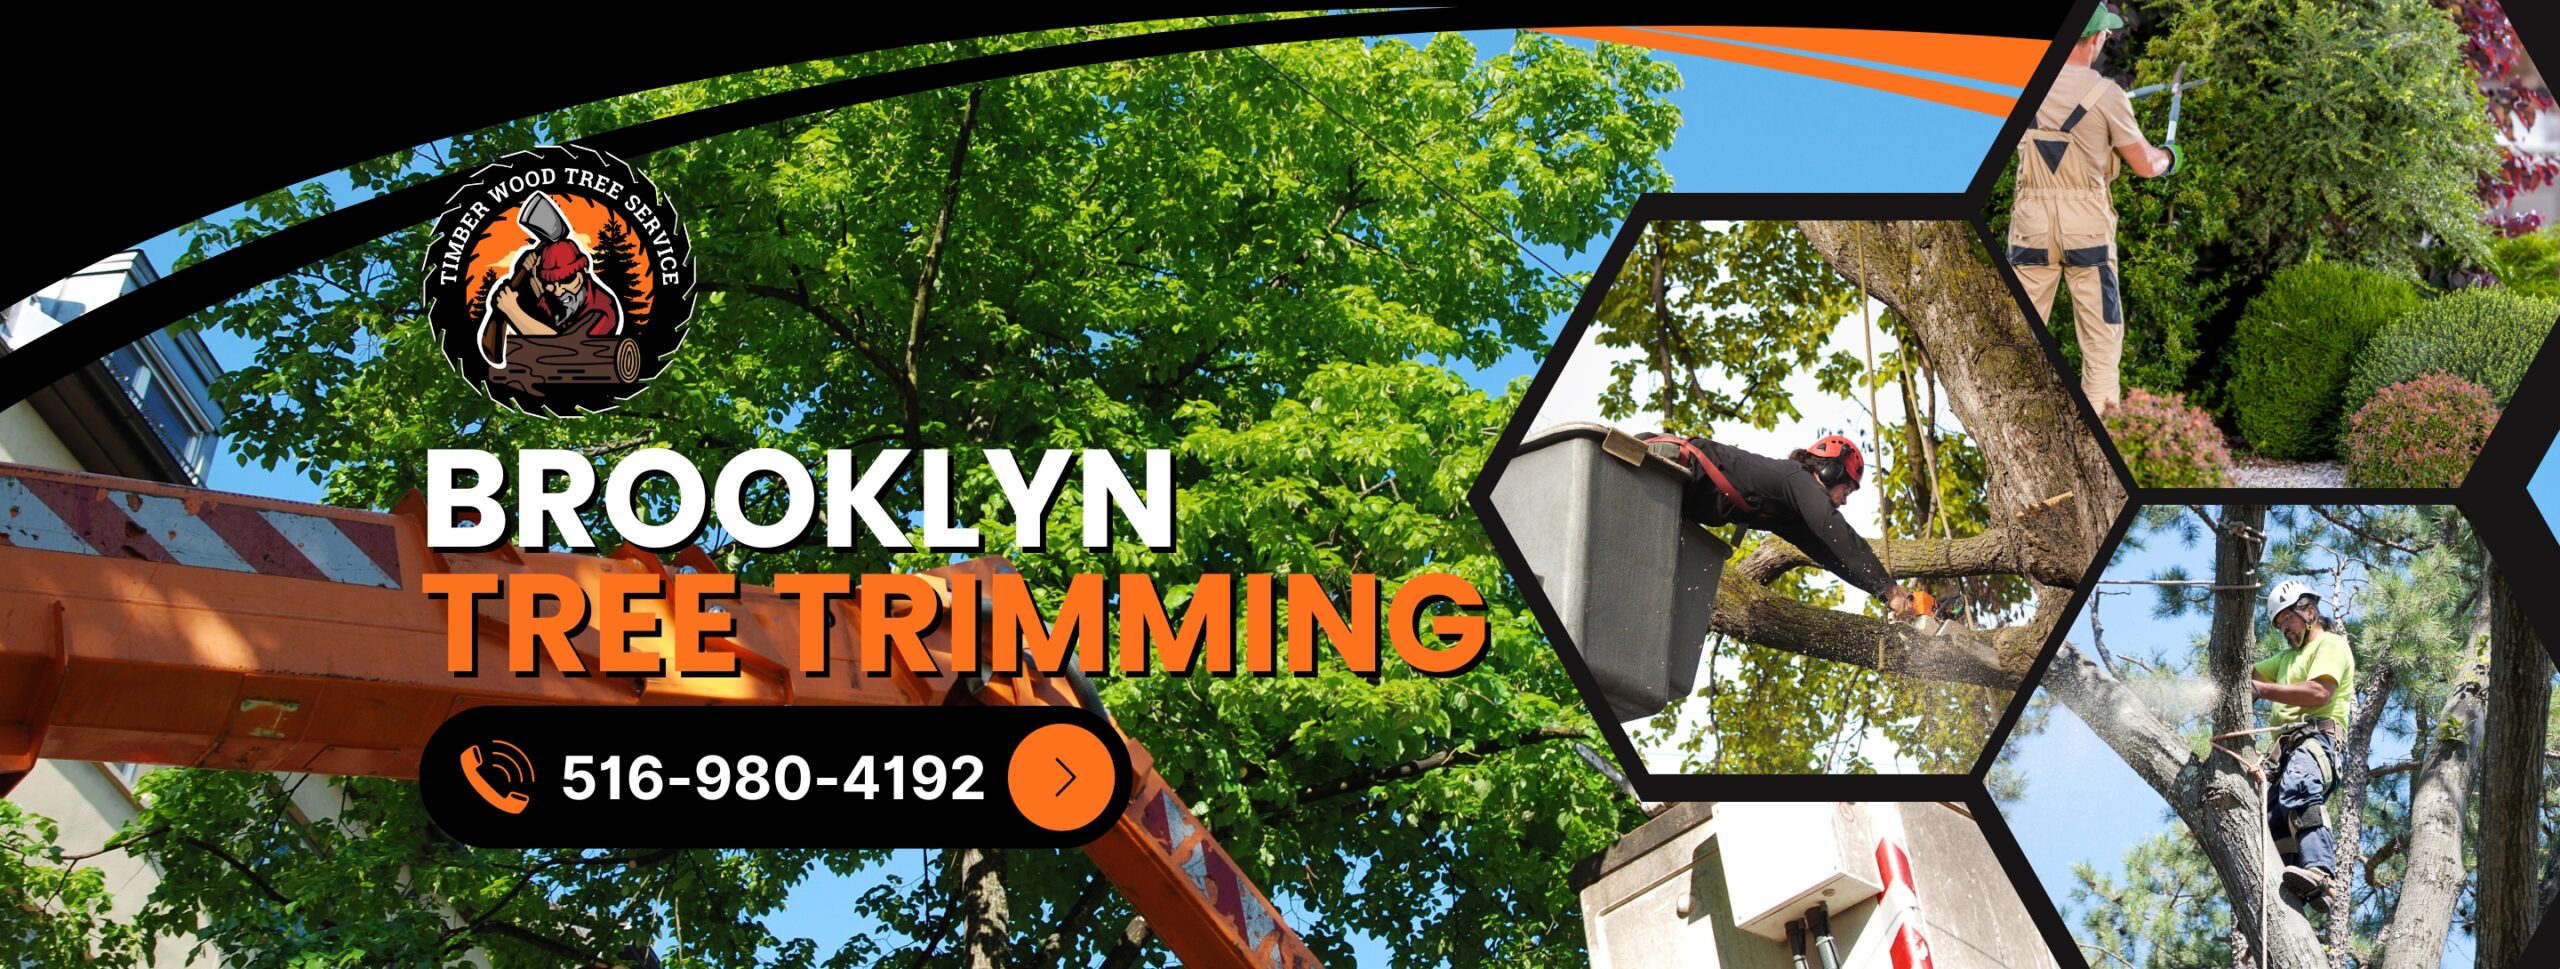 Brooklyn-Tree-Trimming